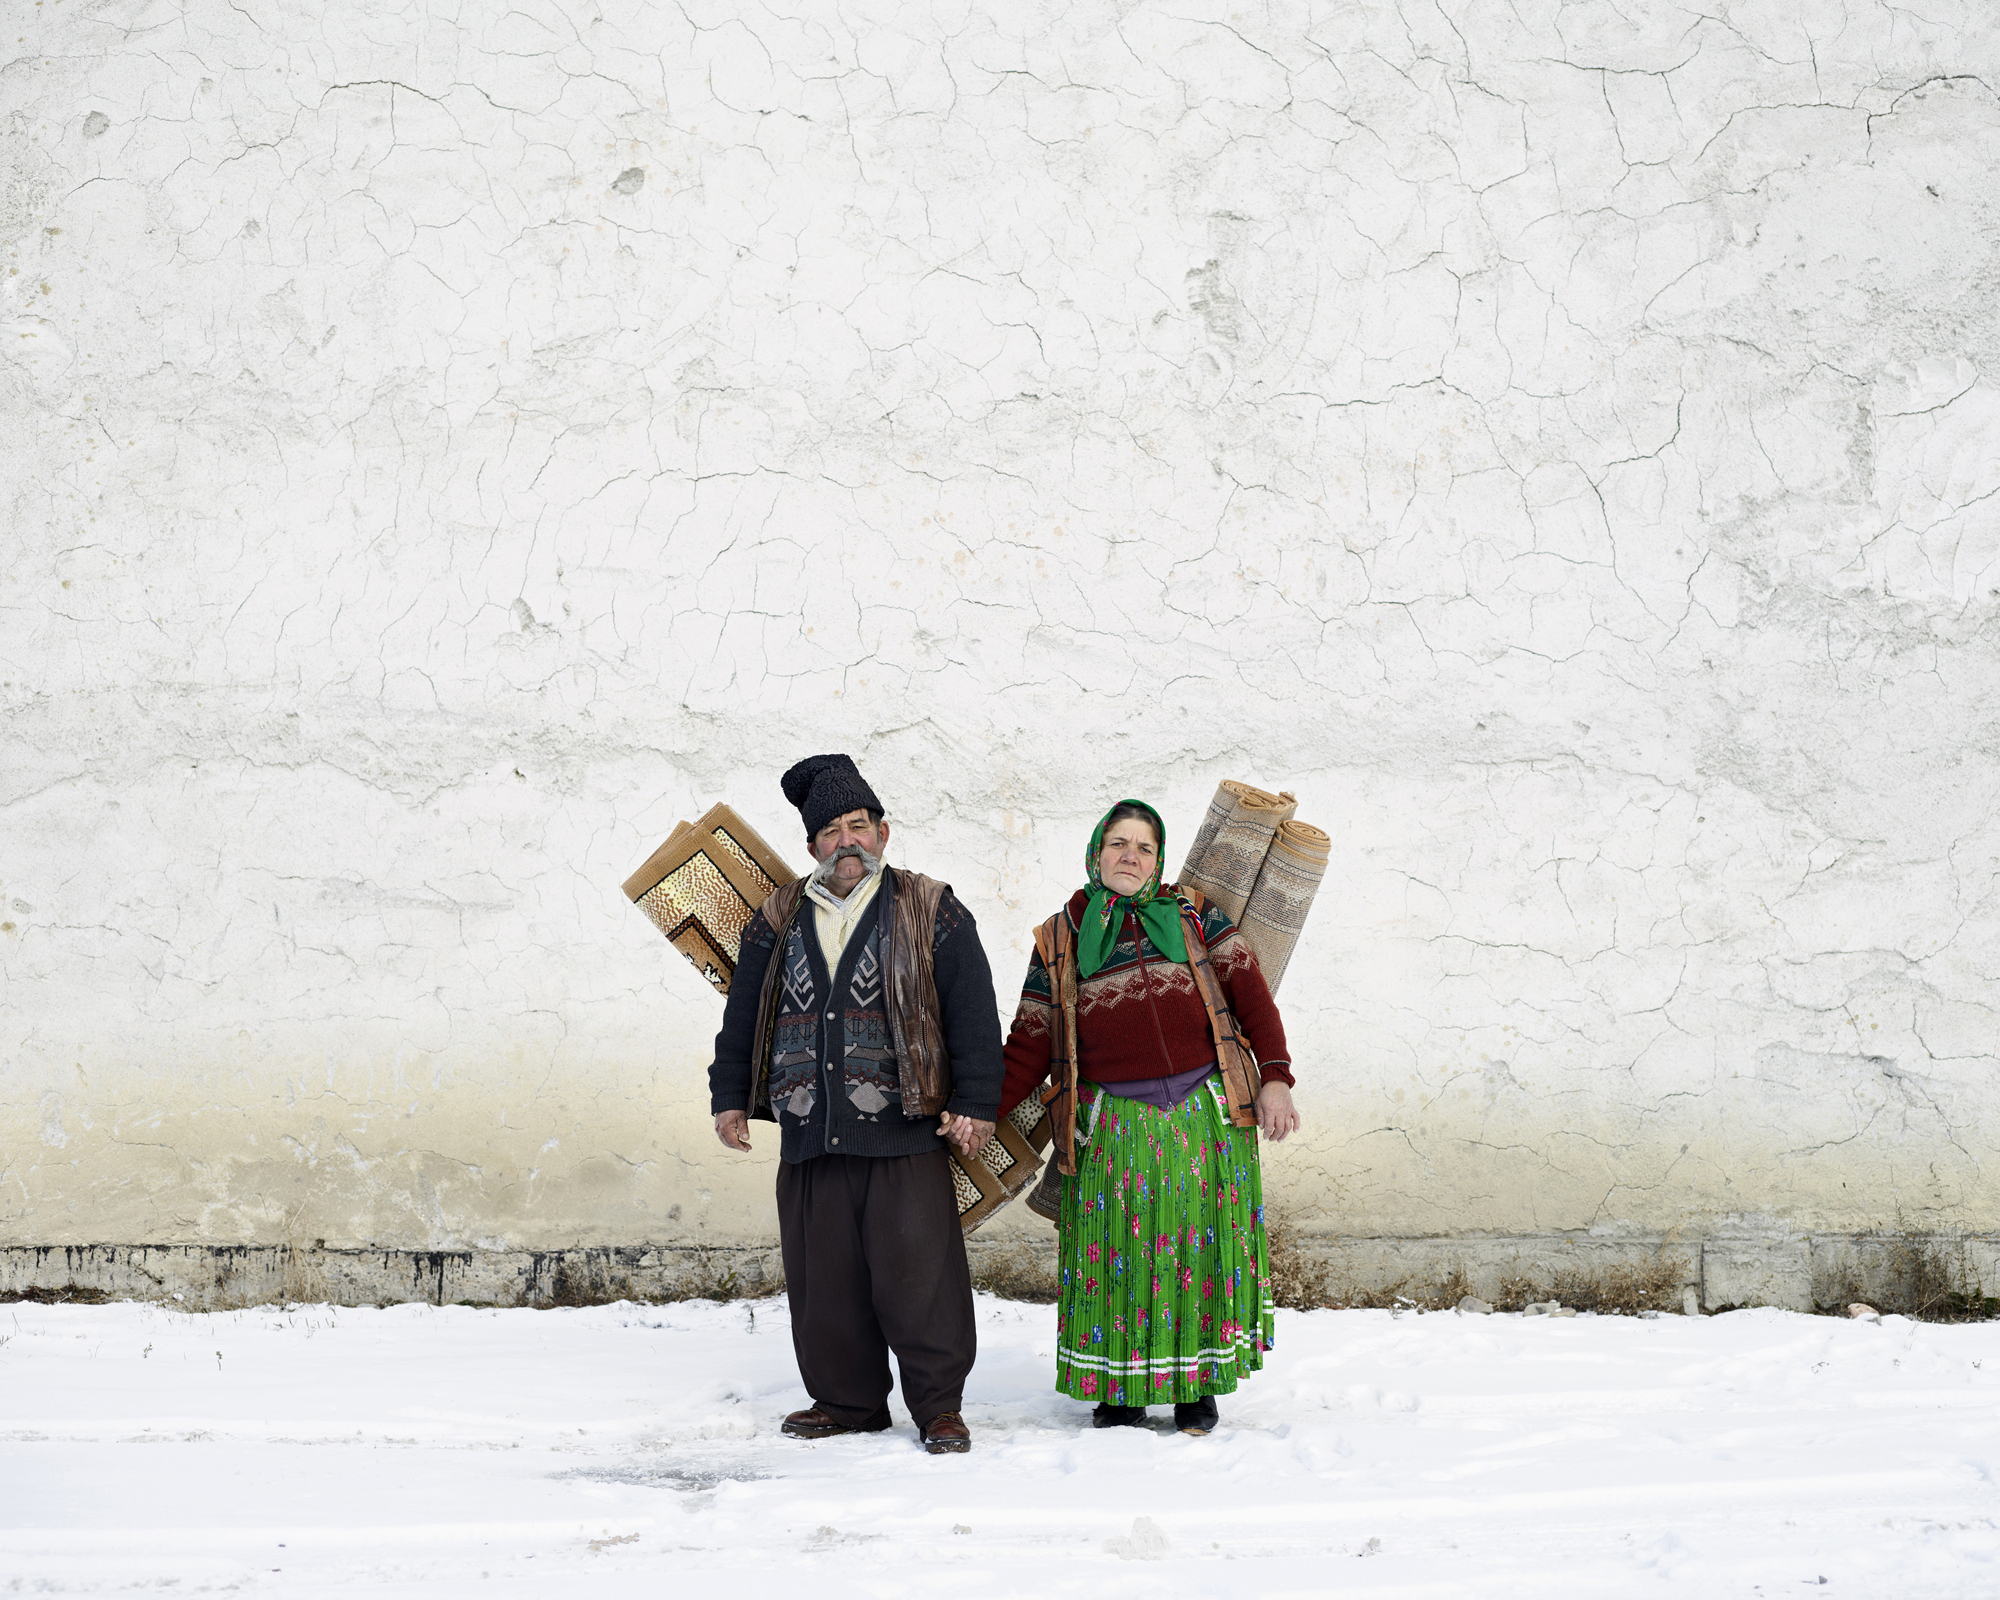 Carpet Sellers (Pojorata, North Romania), 2012